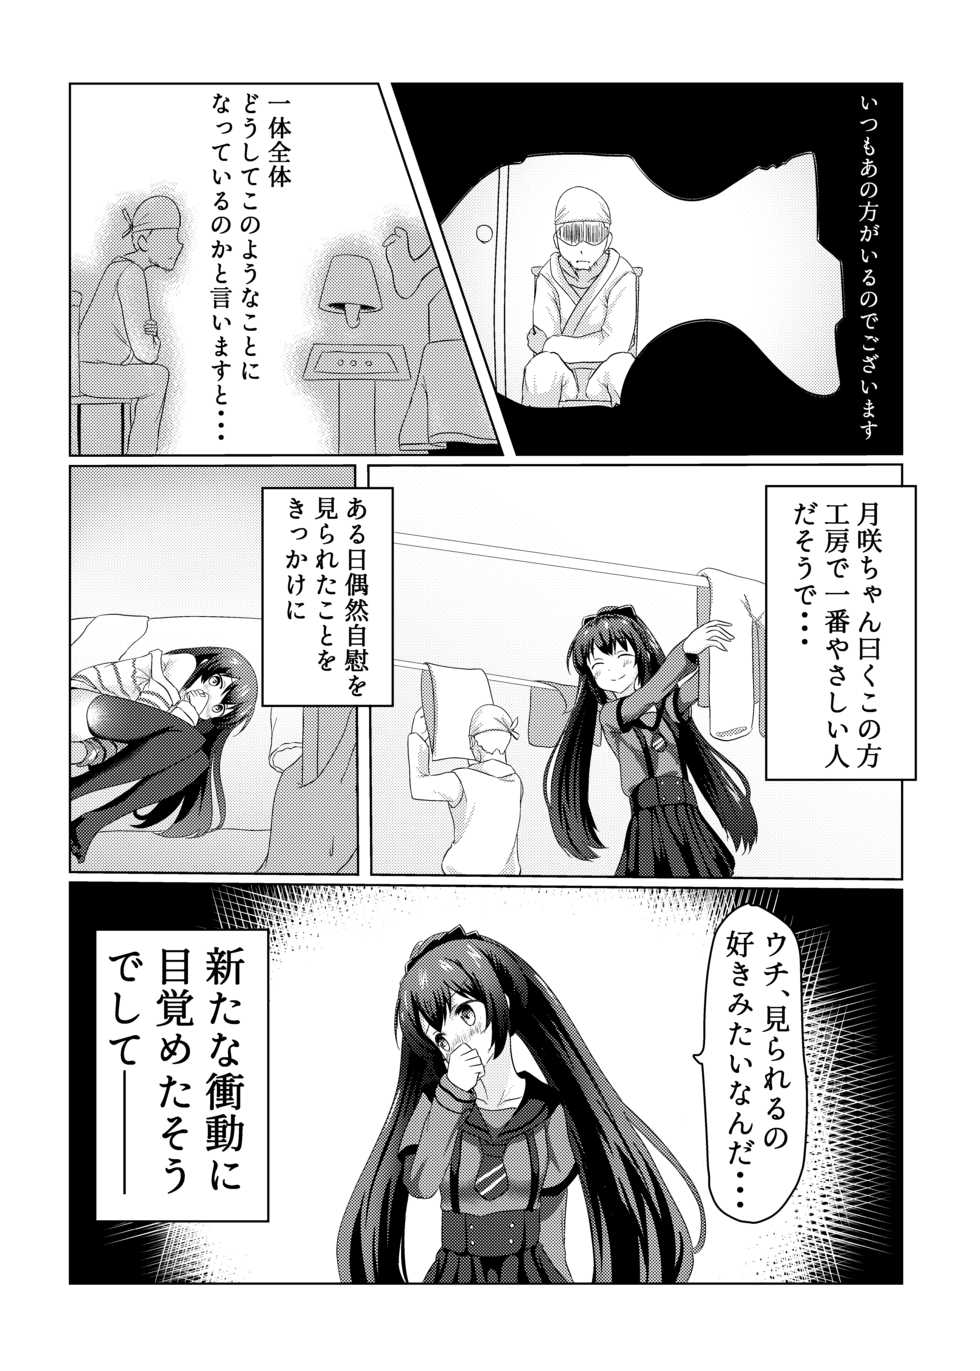 [Zayuu] Tsukuyo ga Waruinodegozaimasu  (Puella Magi Madoka Magica Side Story: Magia Record) - Page 3